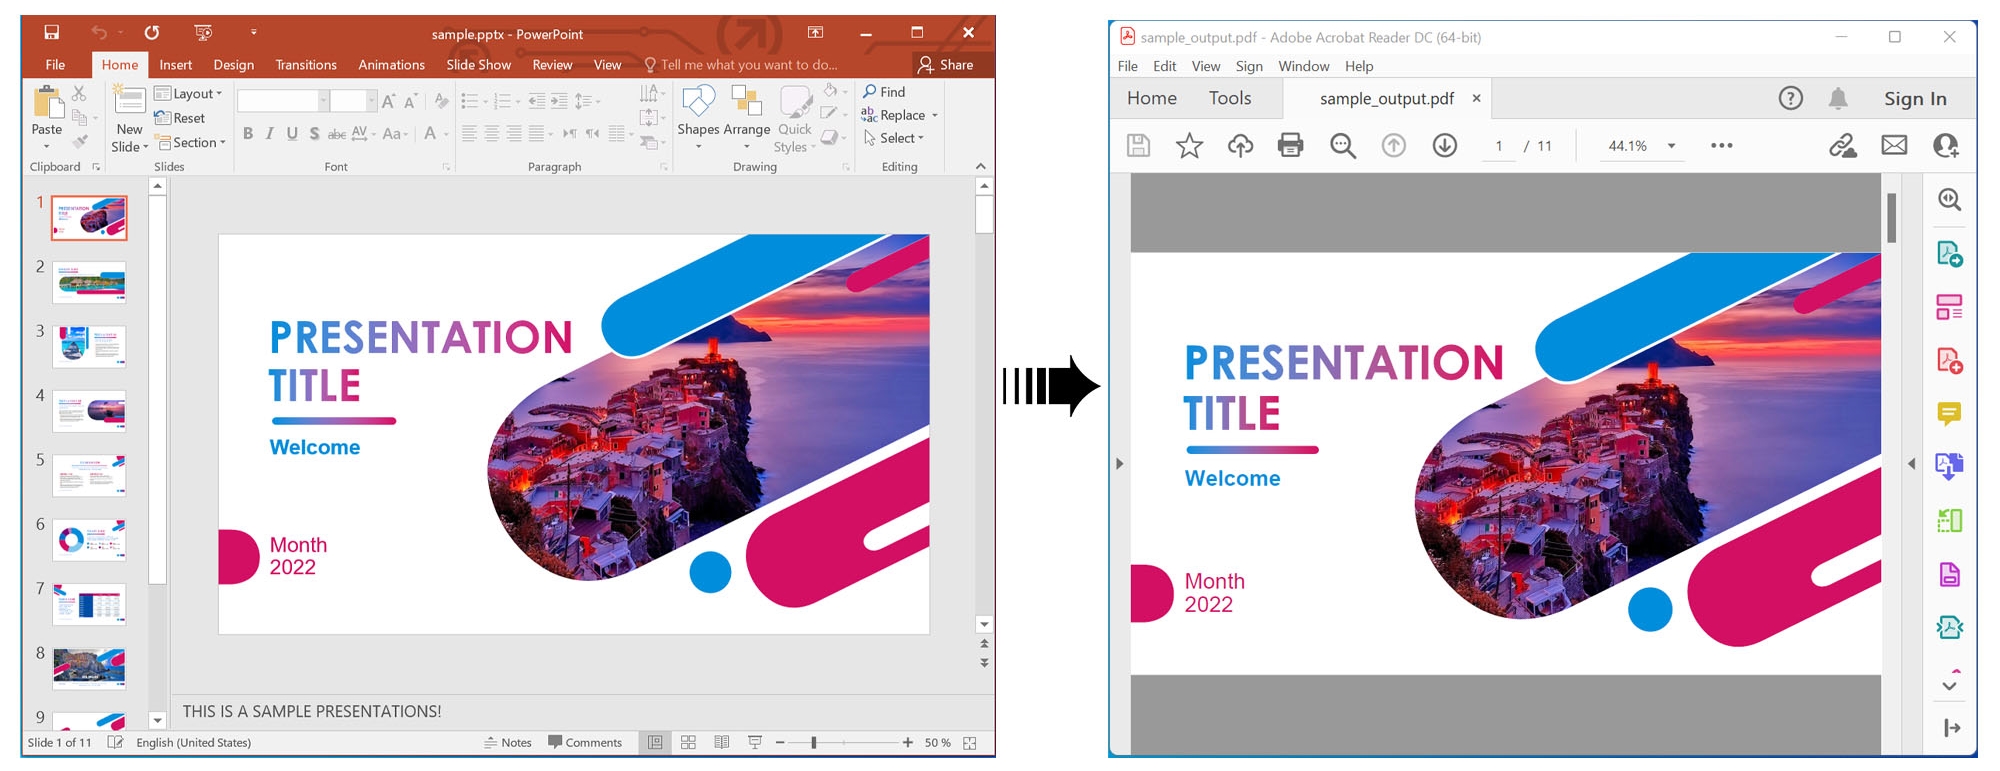 Renderice una presentación de PowerPoint en PDF usando C#.